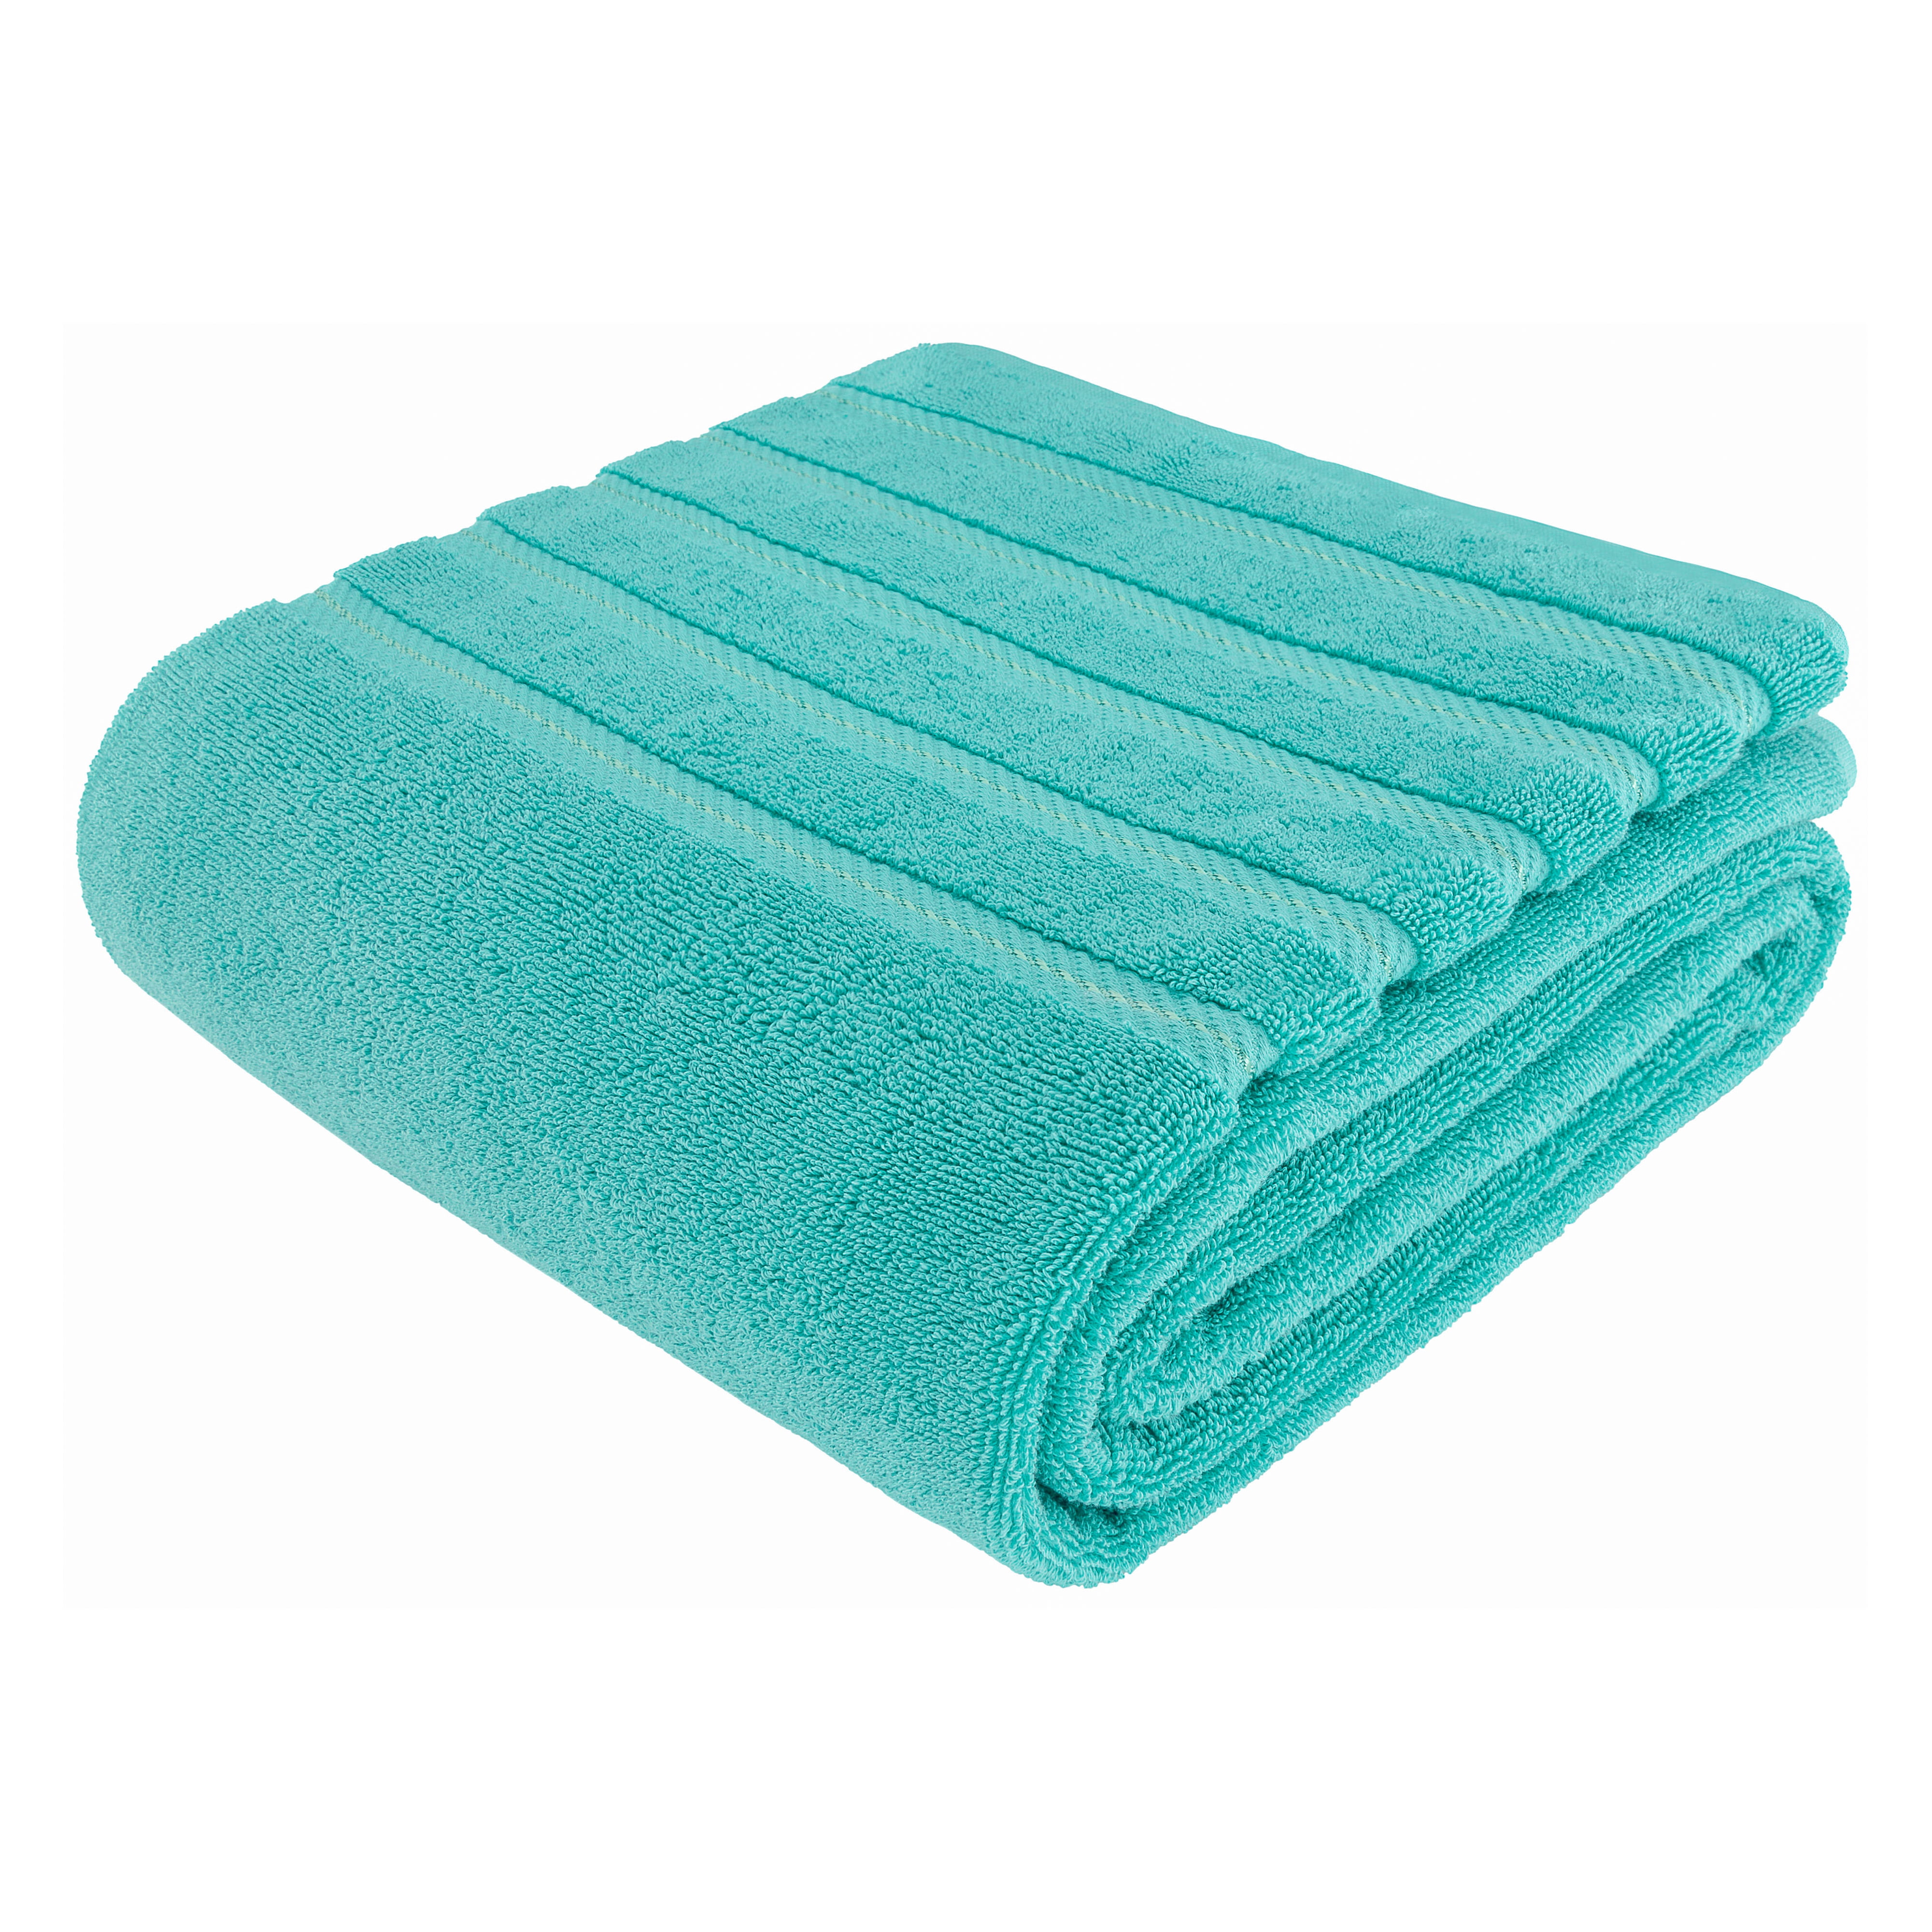 Extra Large Oversized Bath Towels 100% Cotton Turkish Bath Sheet 40x80  Turquoise